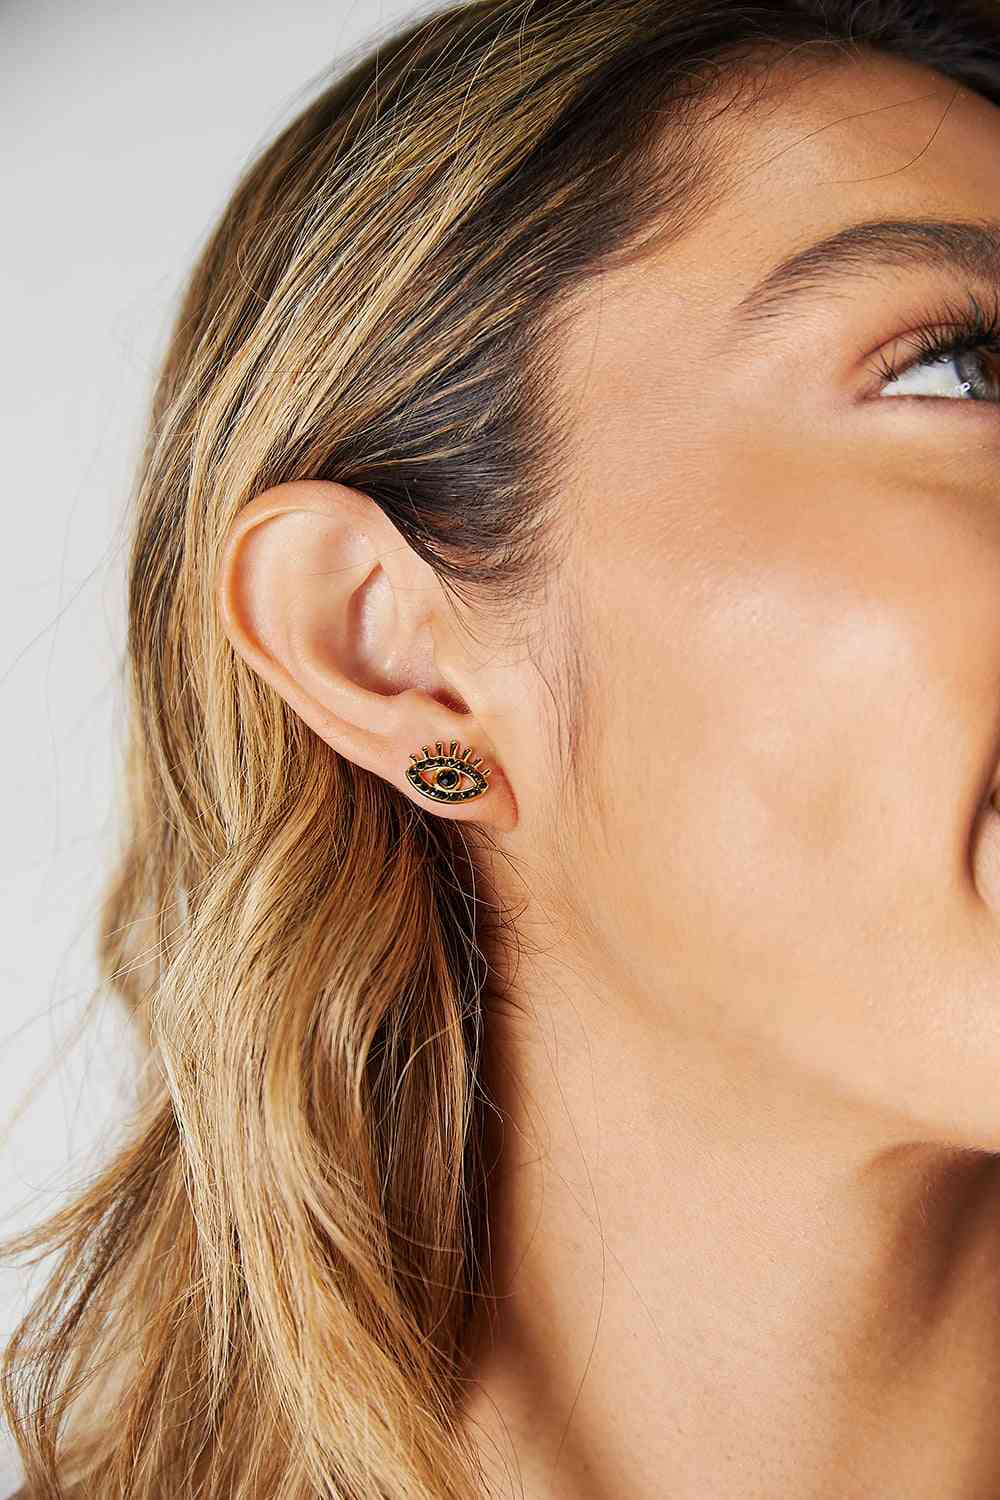 Adored Rhinestone Eye Stud Earrings - Bellisima Clothing Collective